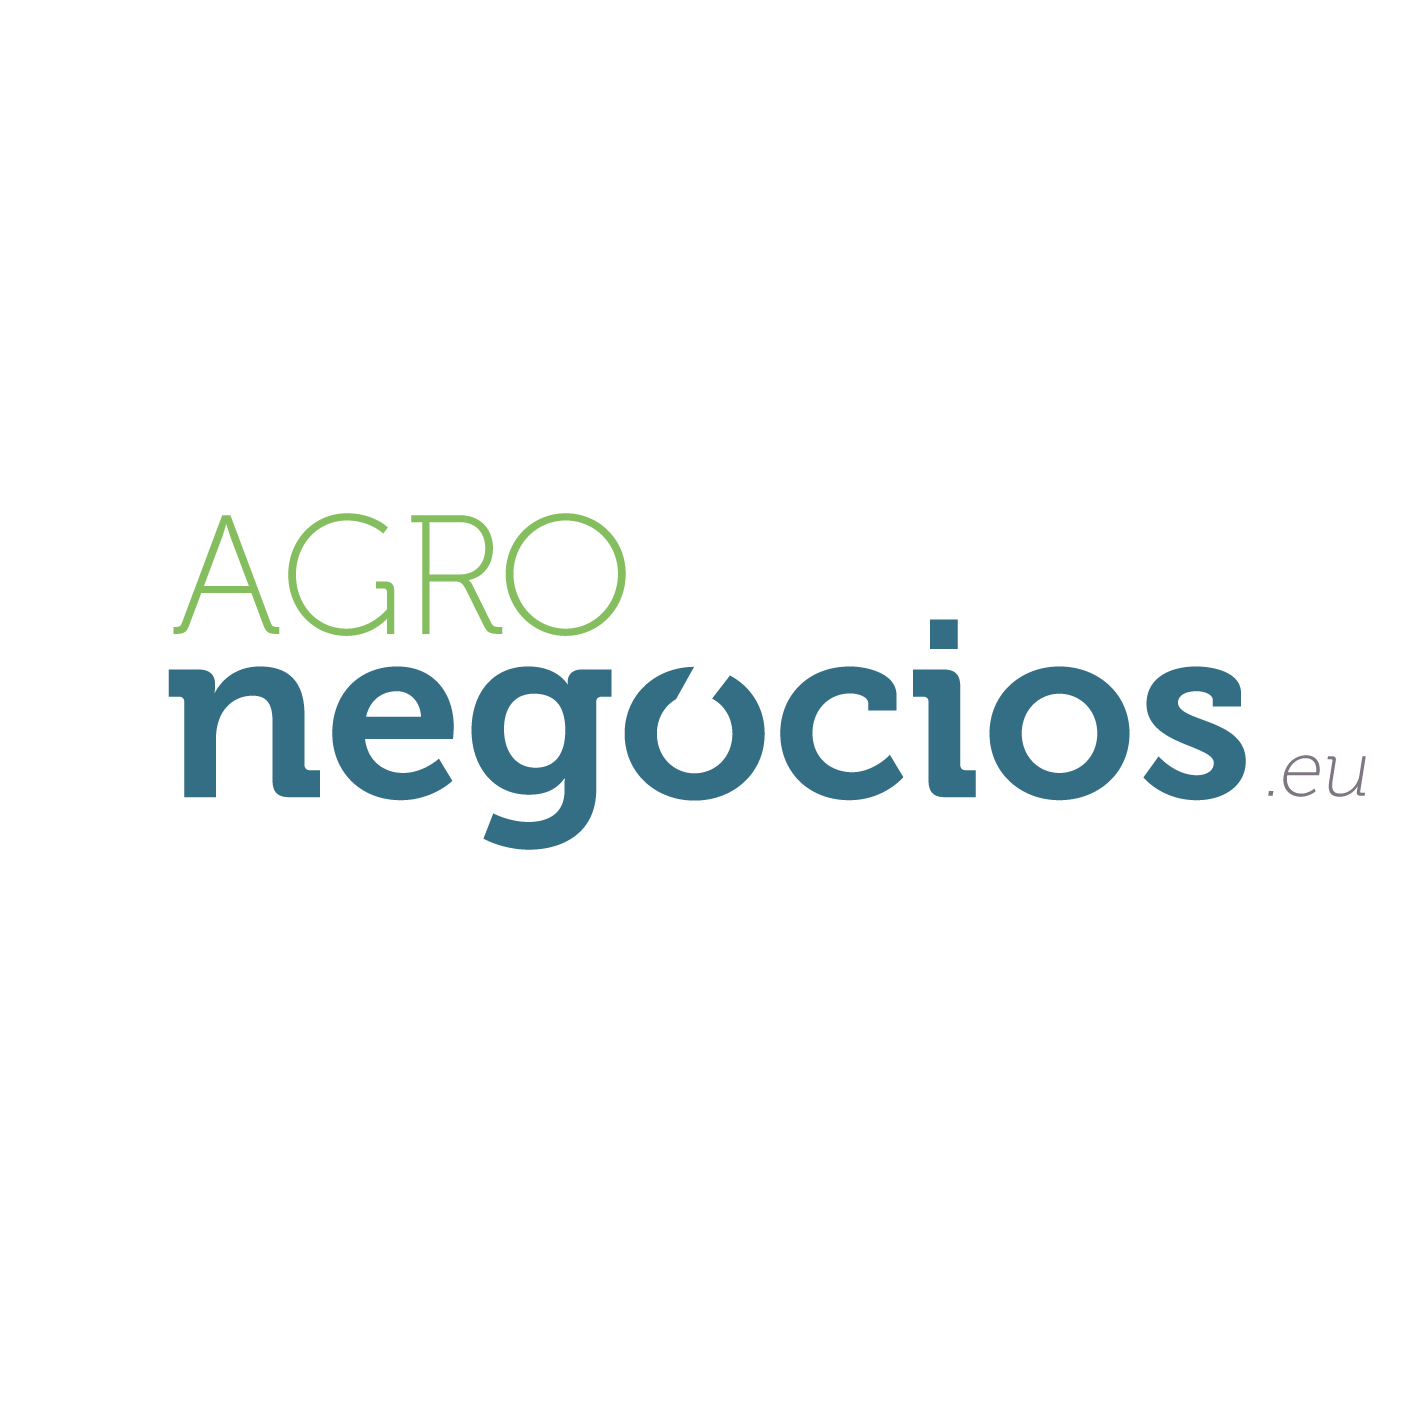 Agronegocios-eu-1-website (3)